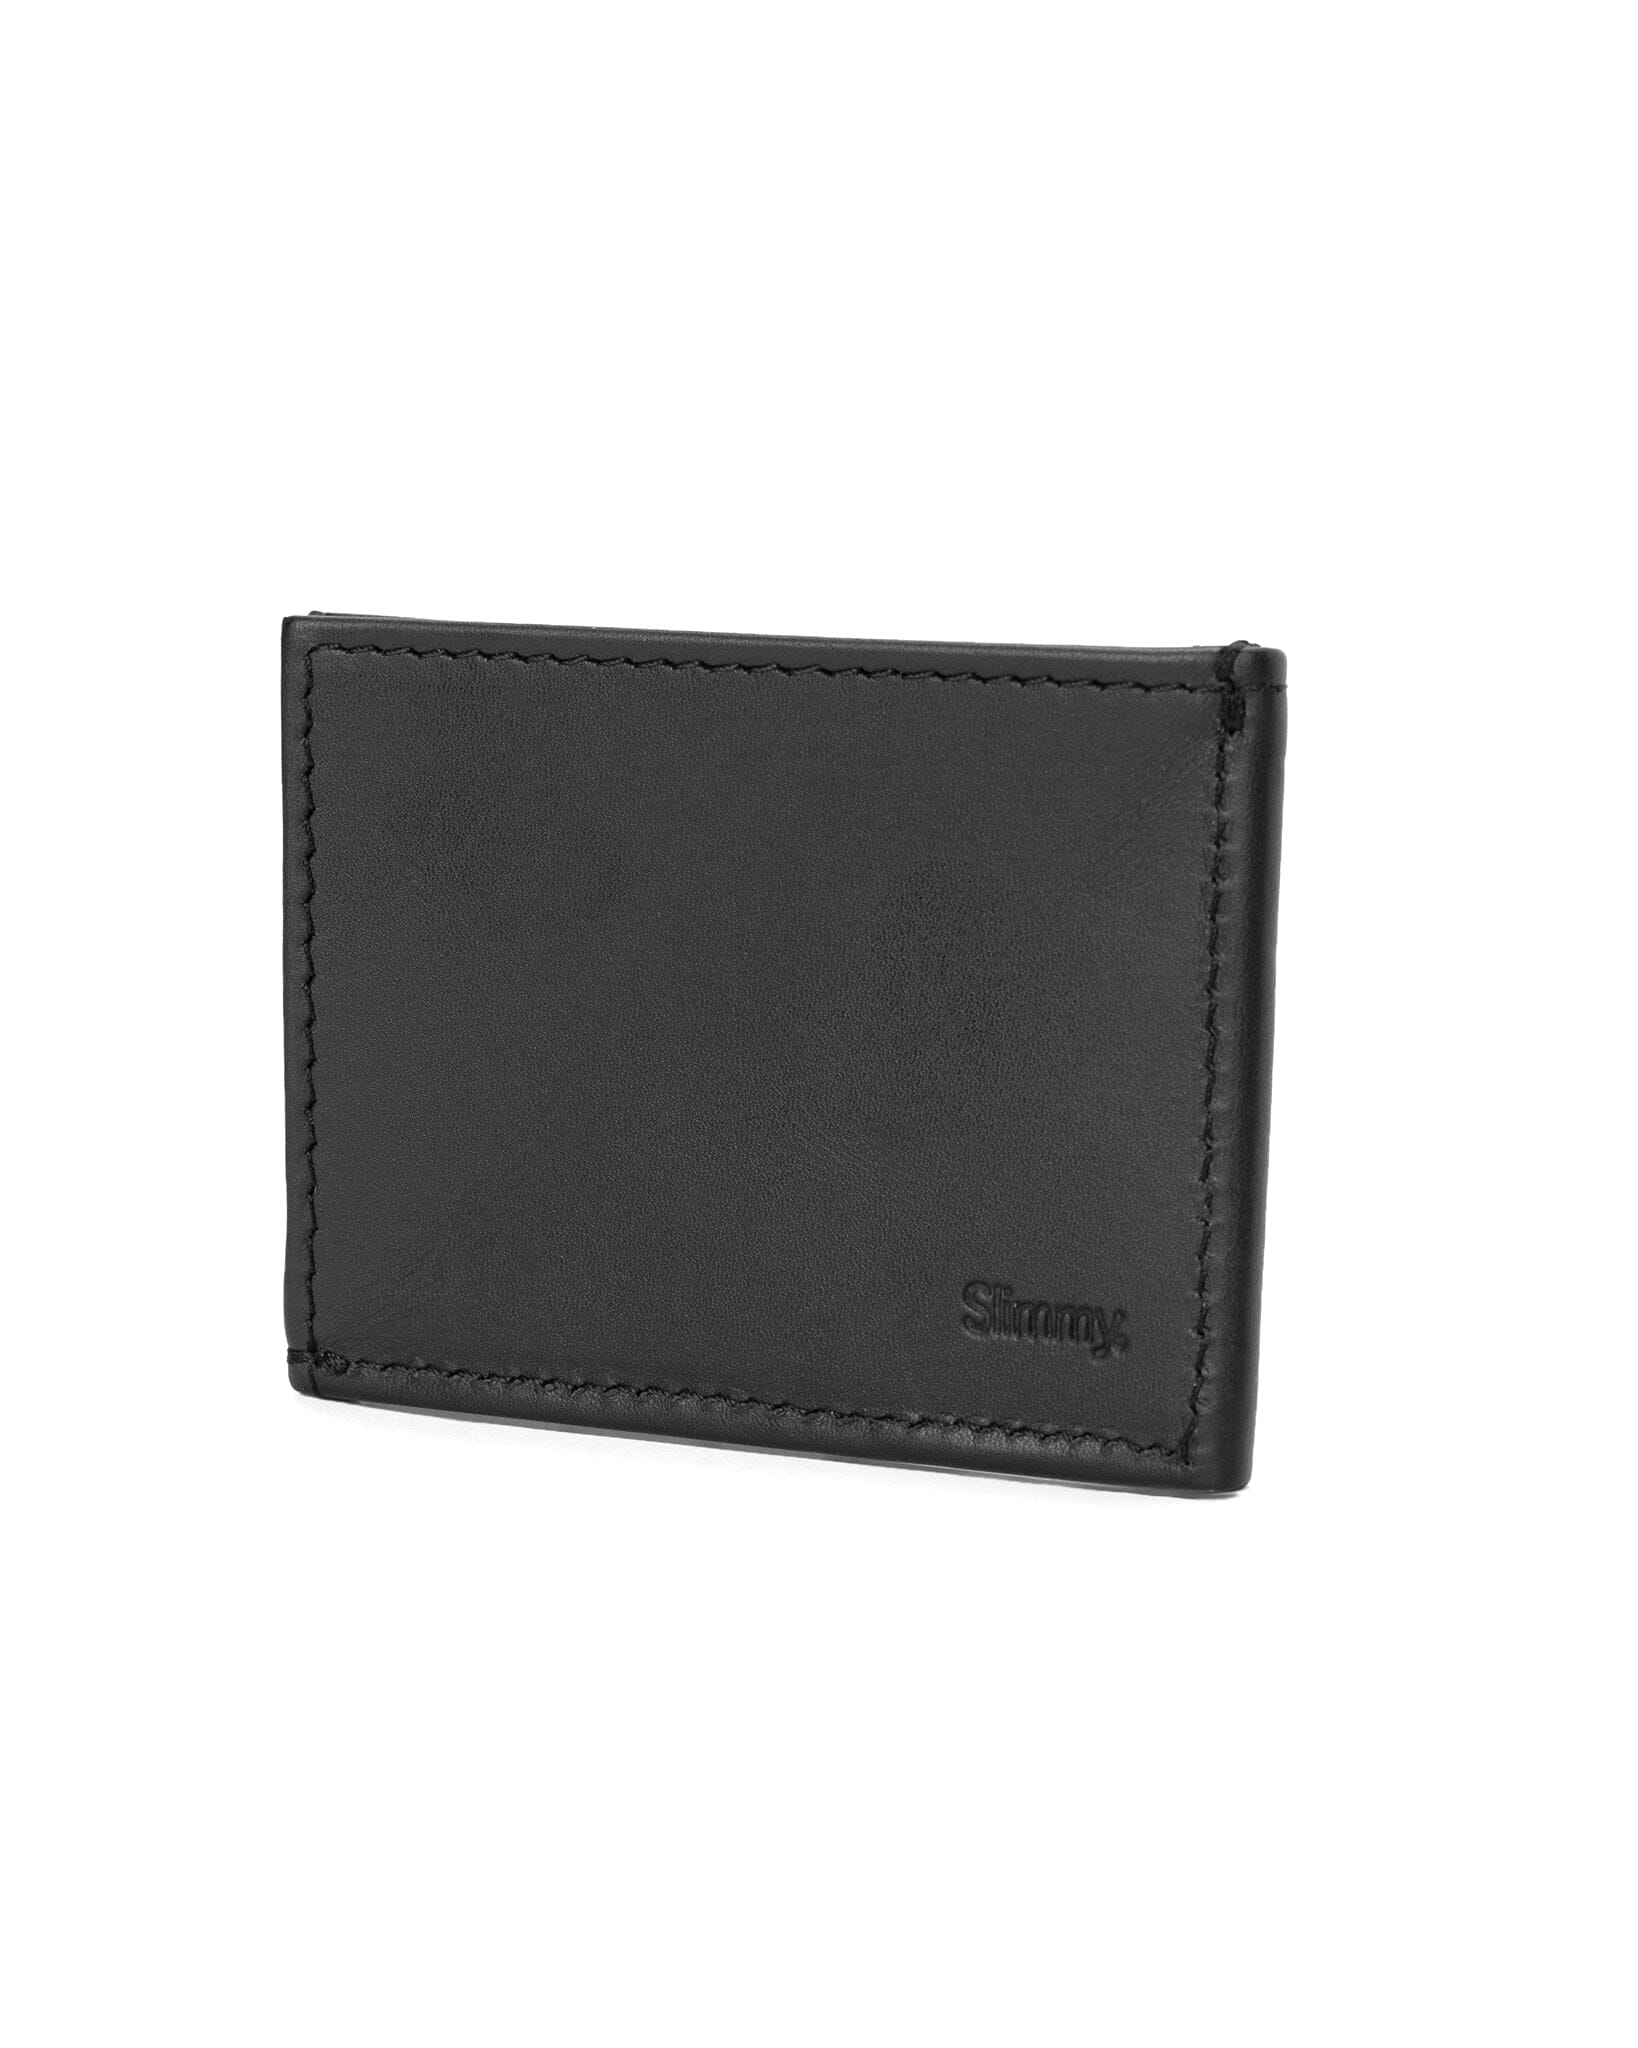 OG V ID Wallet 3-Pocket Wallet (76mm) - Stealth Wallet Slimmy   